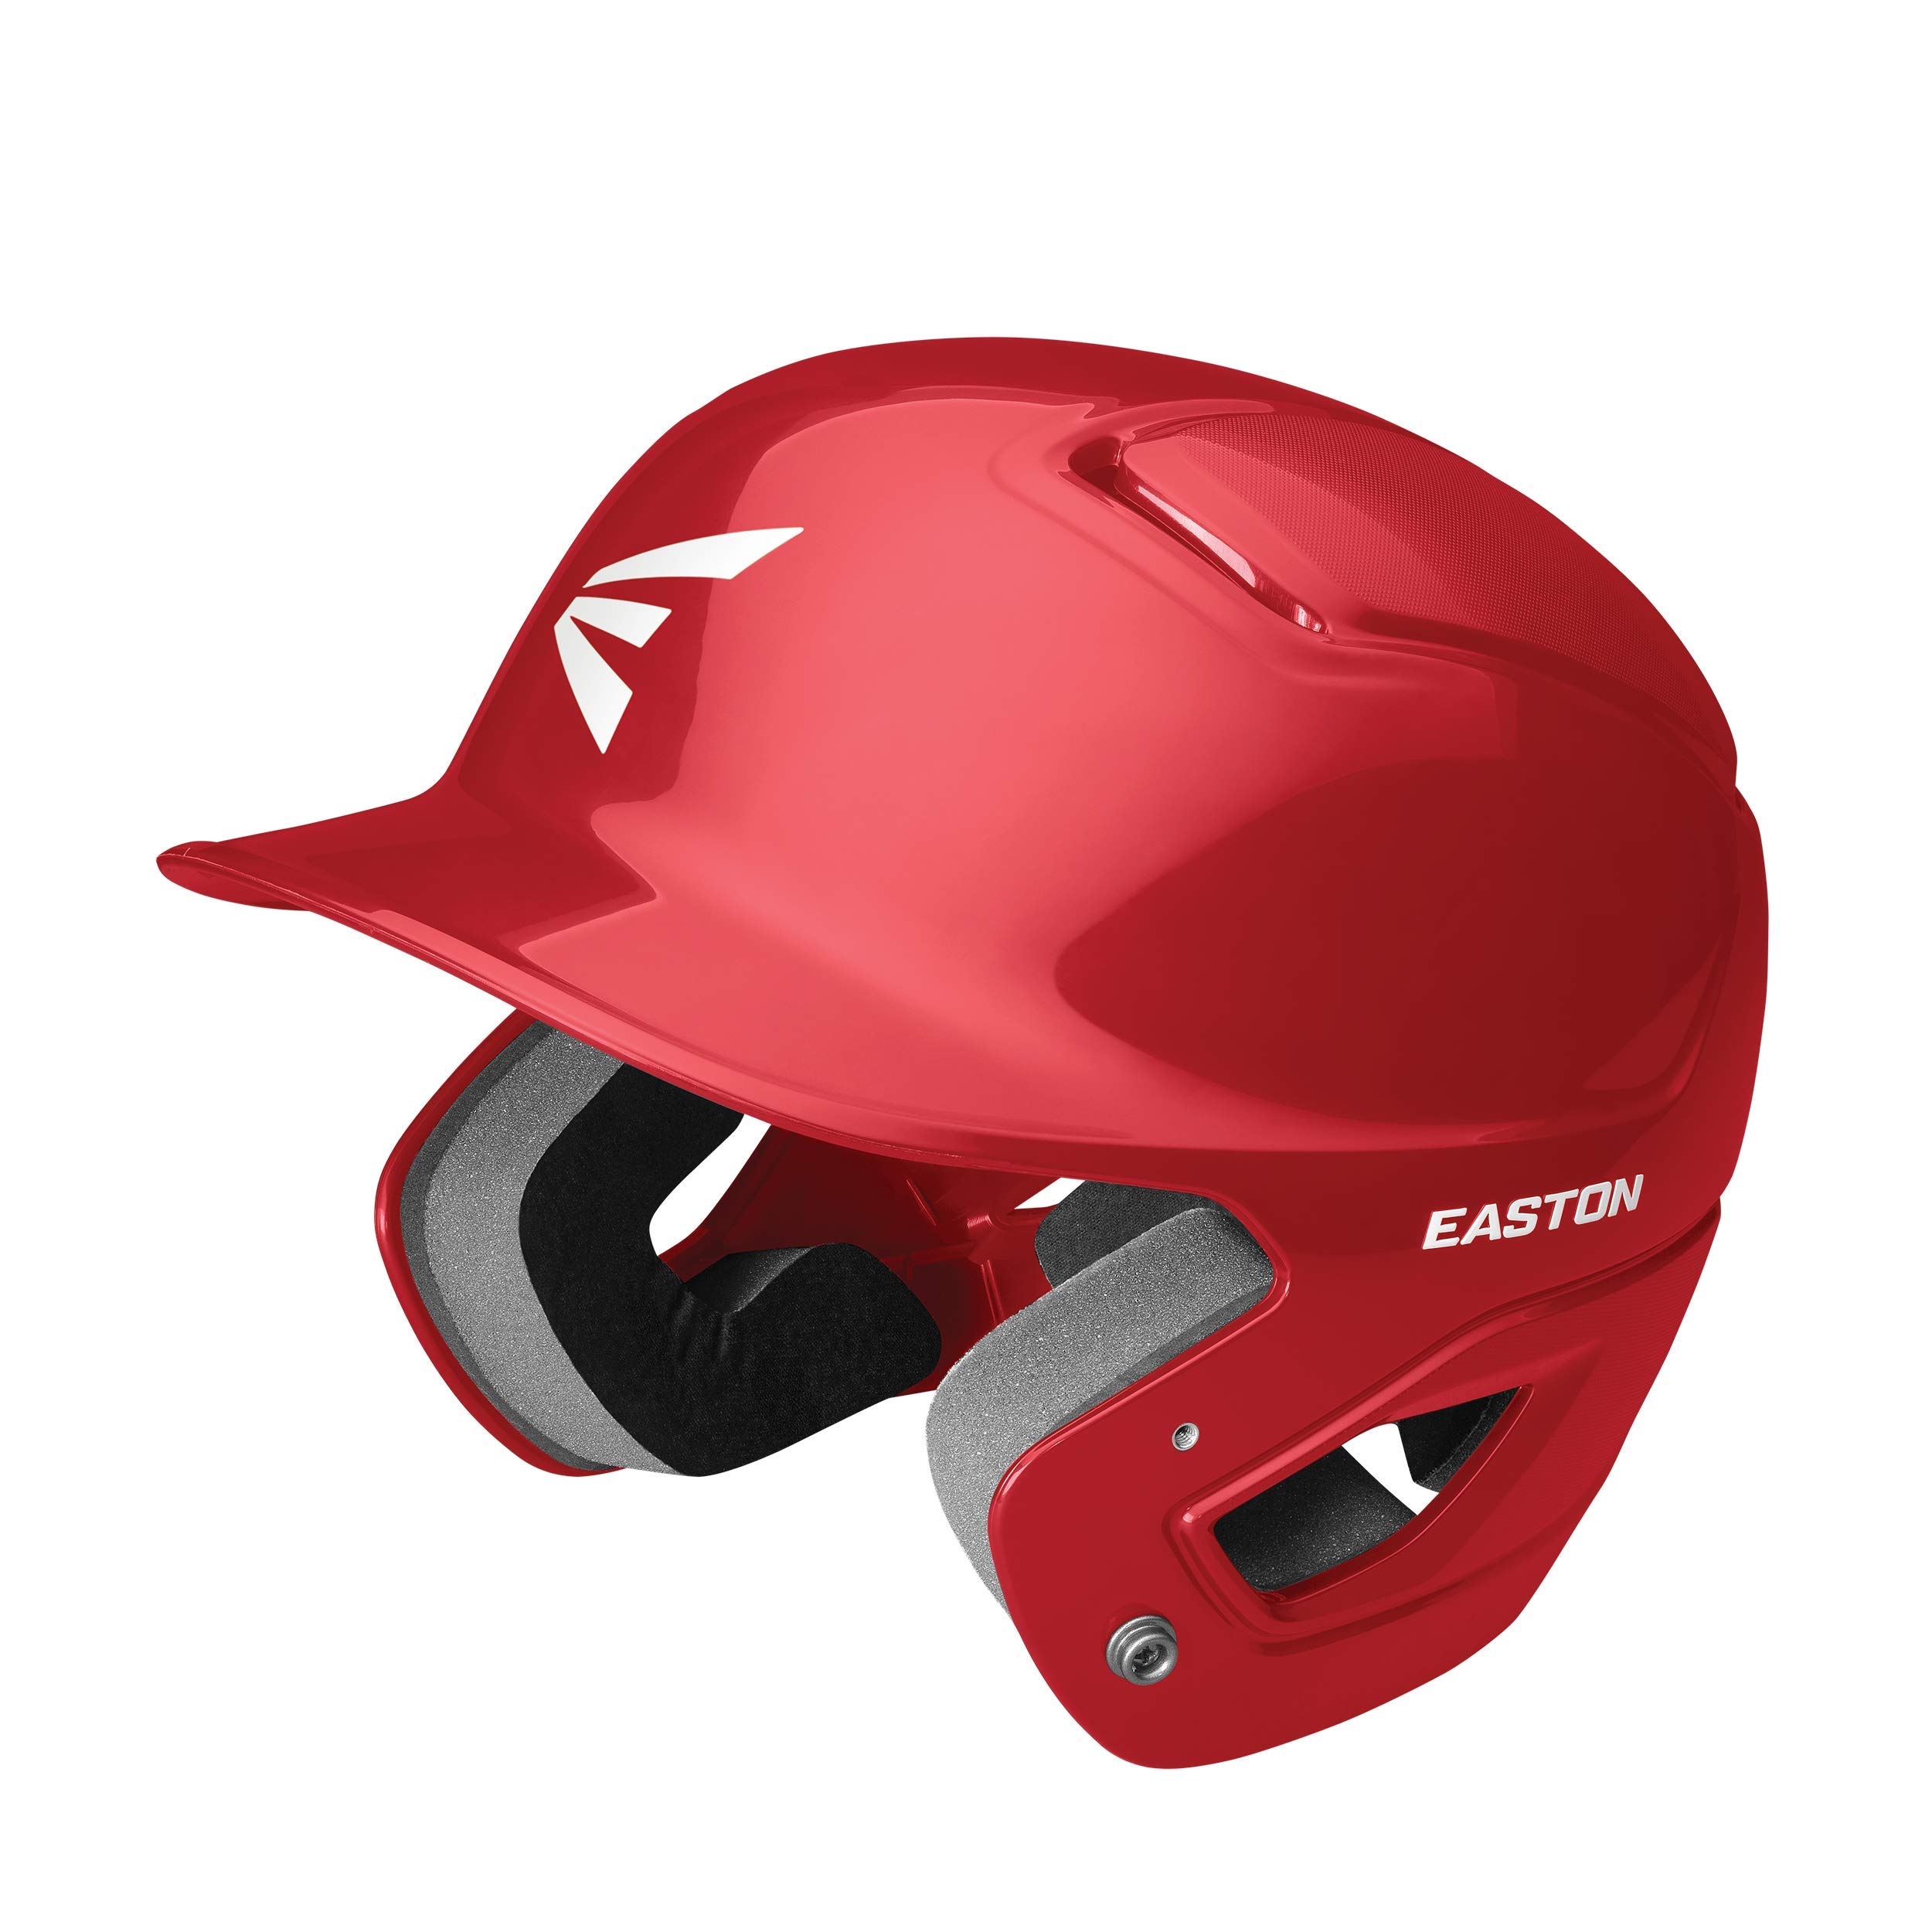 Easton Alpha Baseball Battting Helmet, Tballsmall, Red